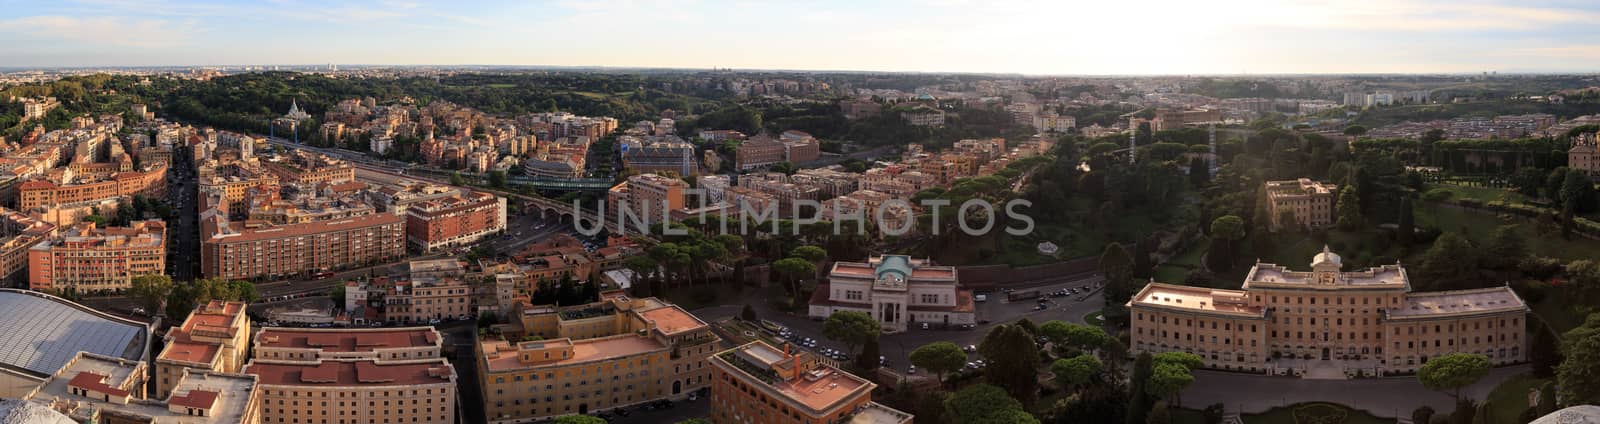 Vatican City Top View by niglaynike